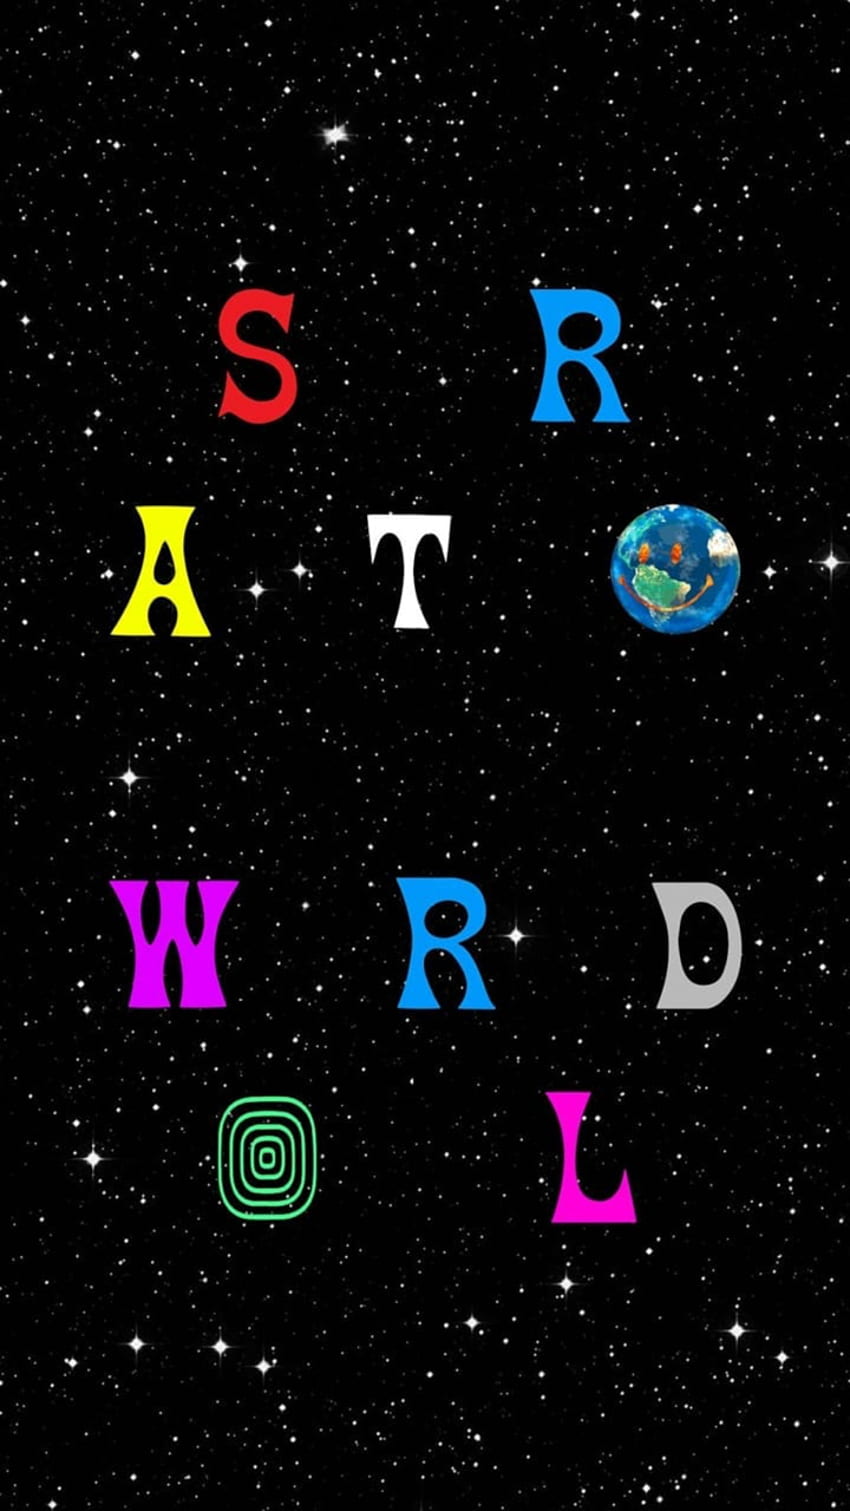 Astroworld untuk ponsel, tablet, komputer, dan perangkat lain dan. Musik iPhone, Travis scott iphone, Trippy, Astroworld Logo wallpaper ponsel HD